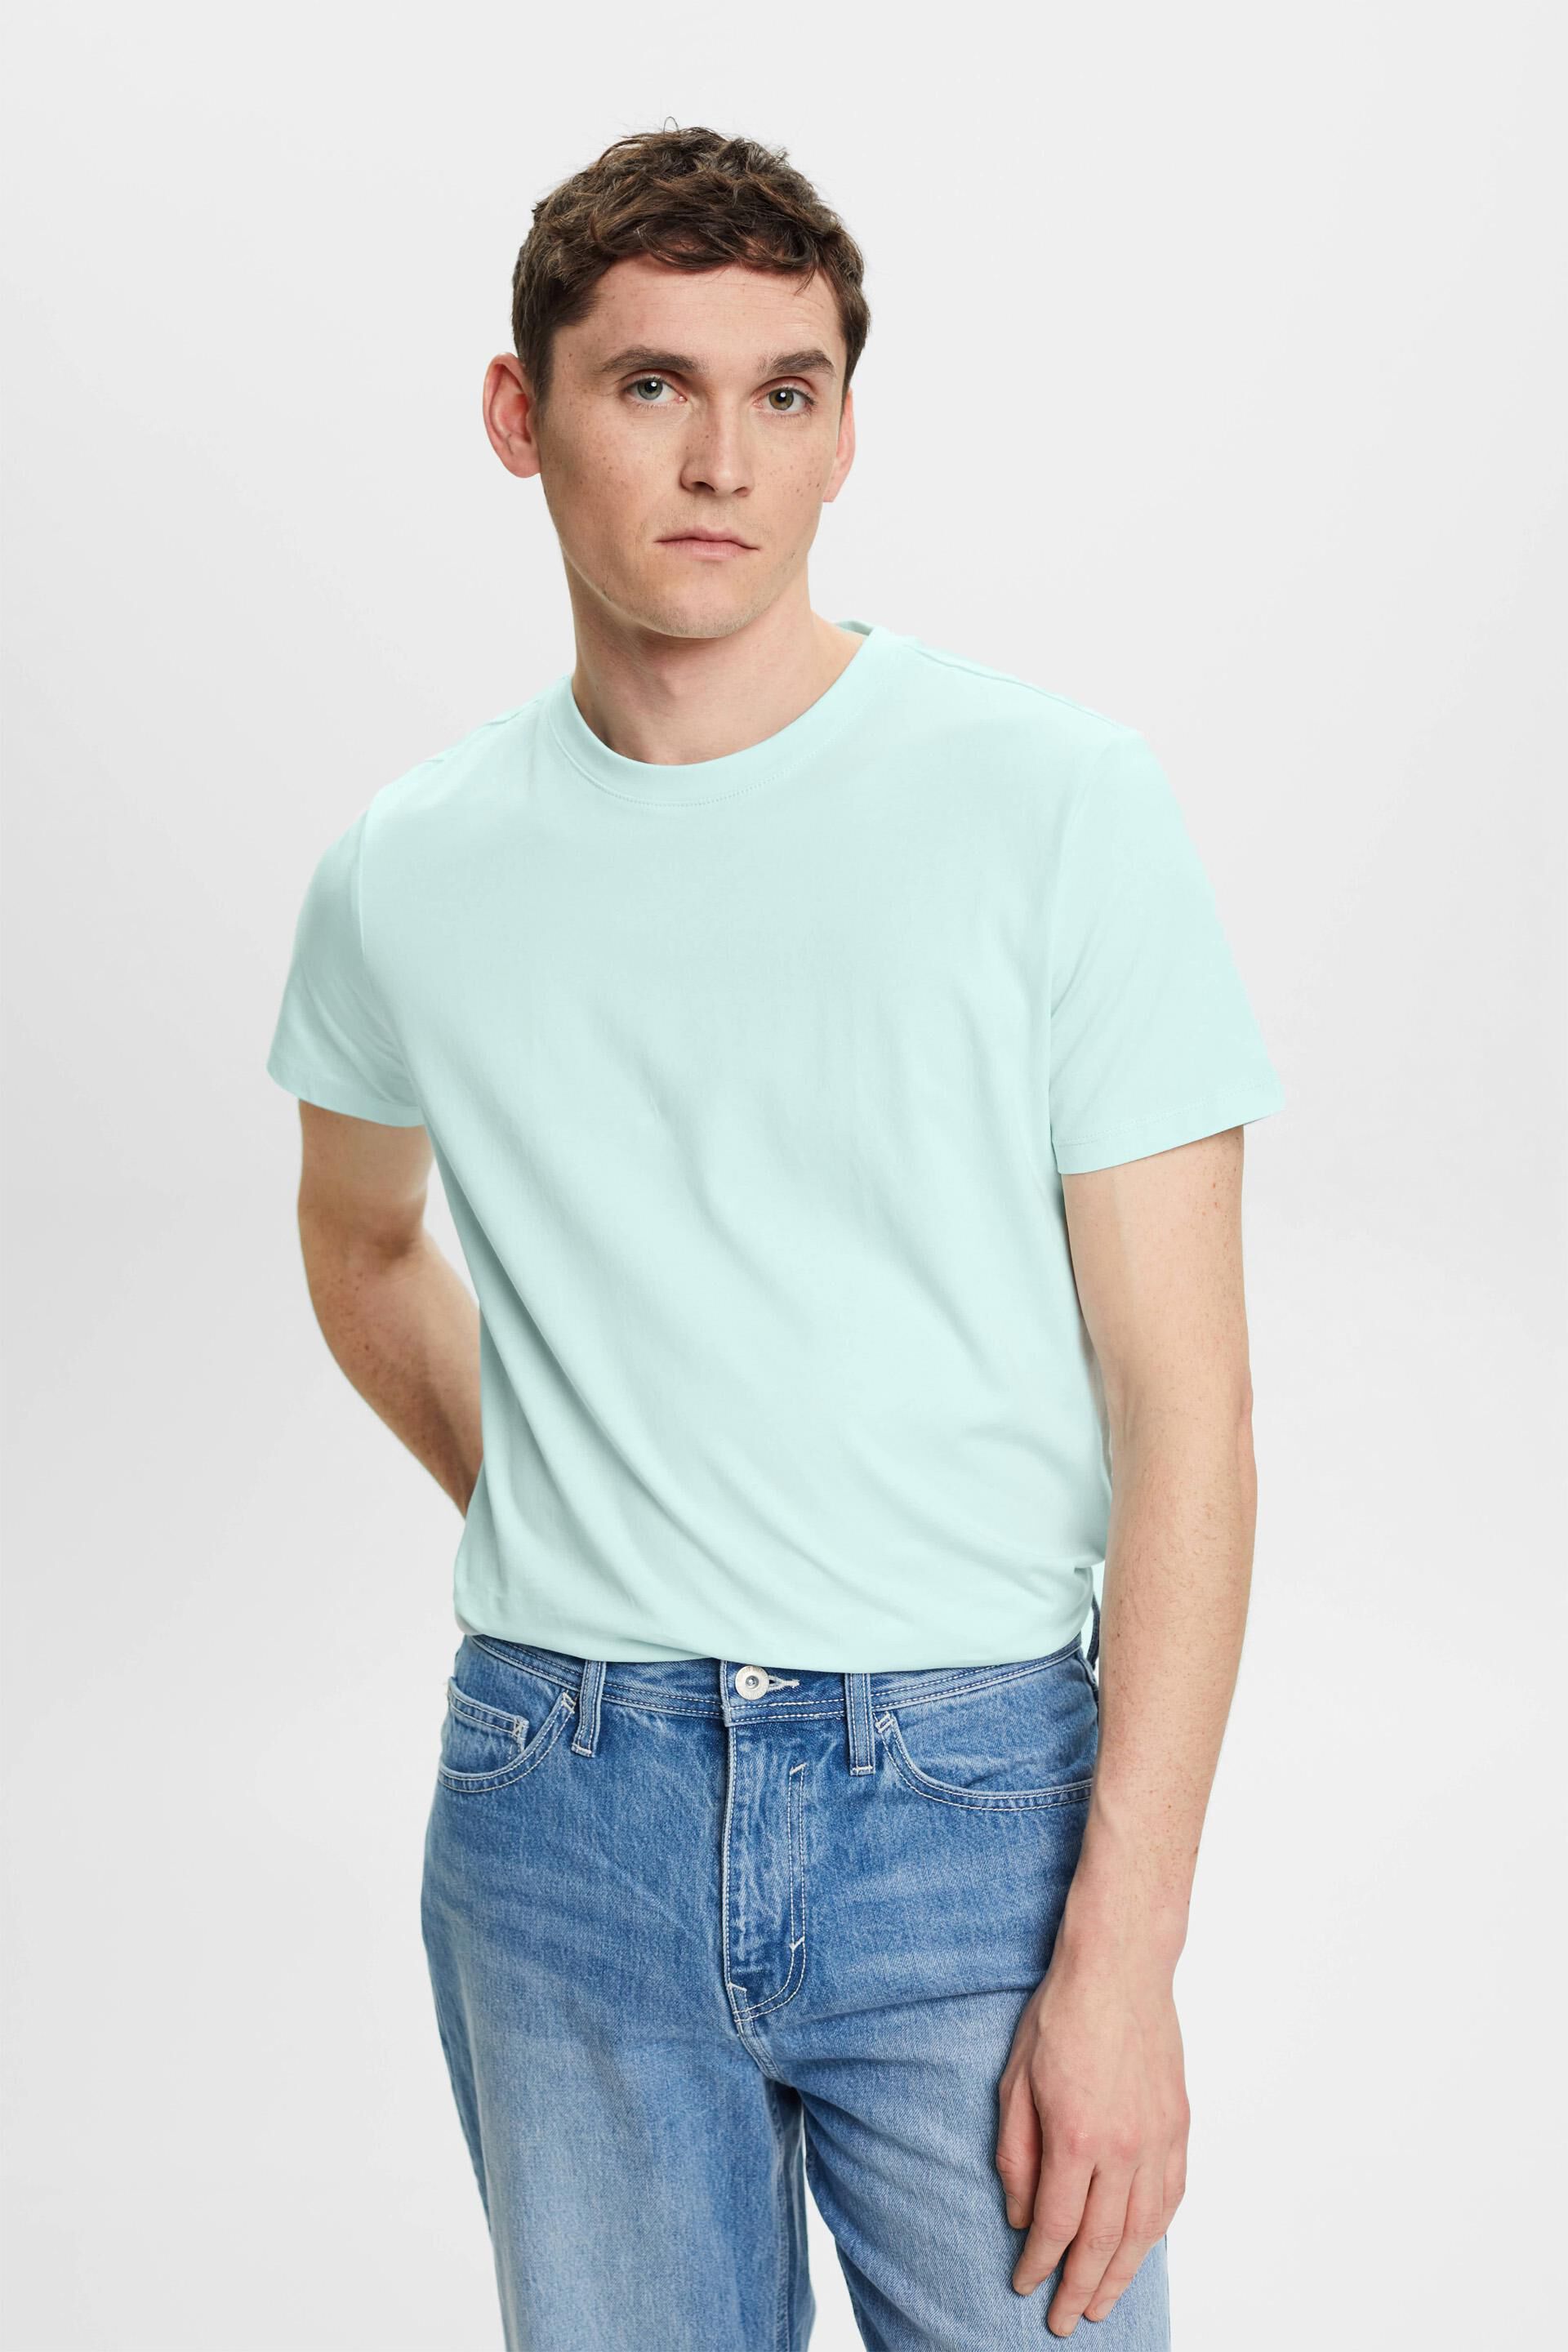 Esprit cotton Slim fit t-shirt